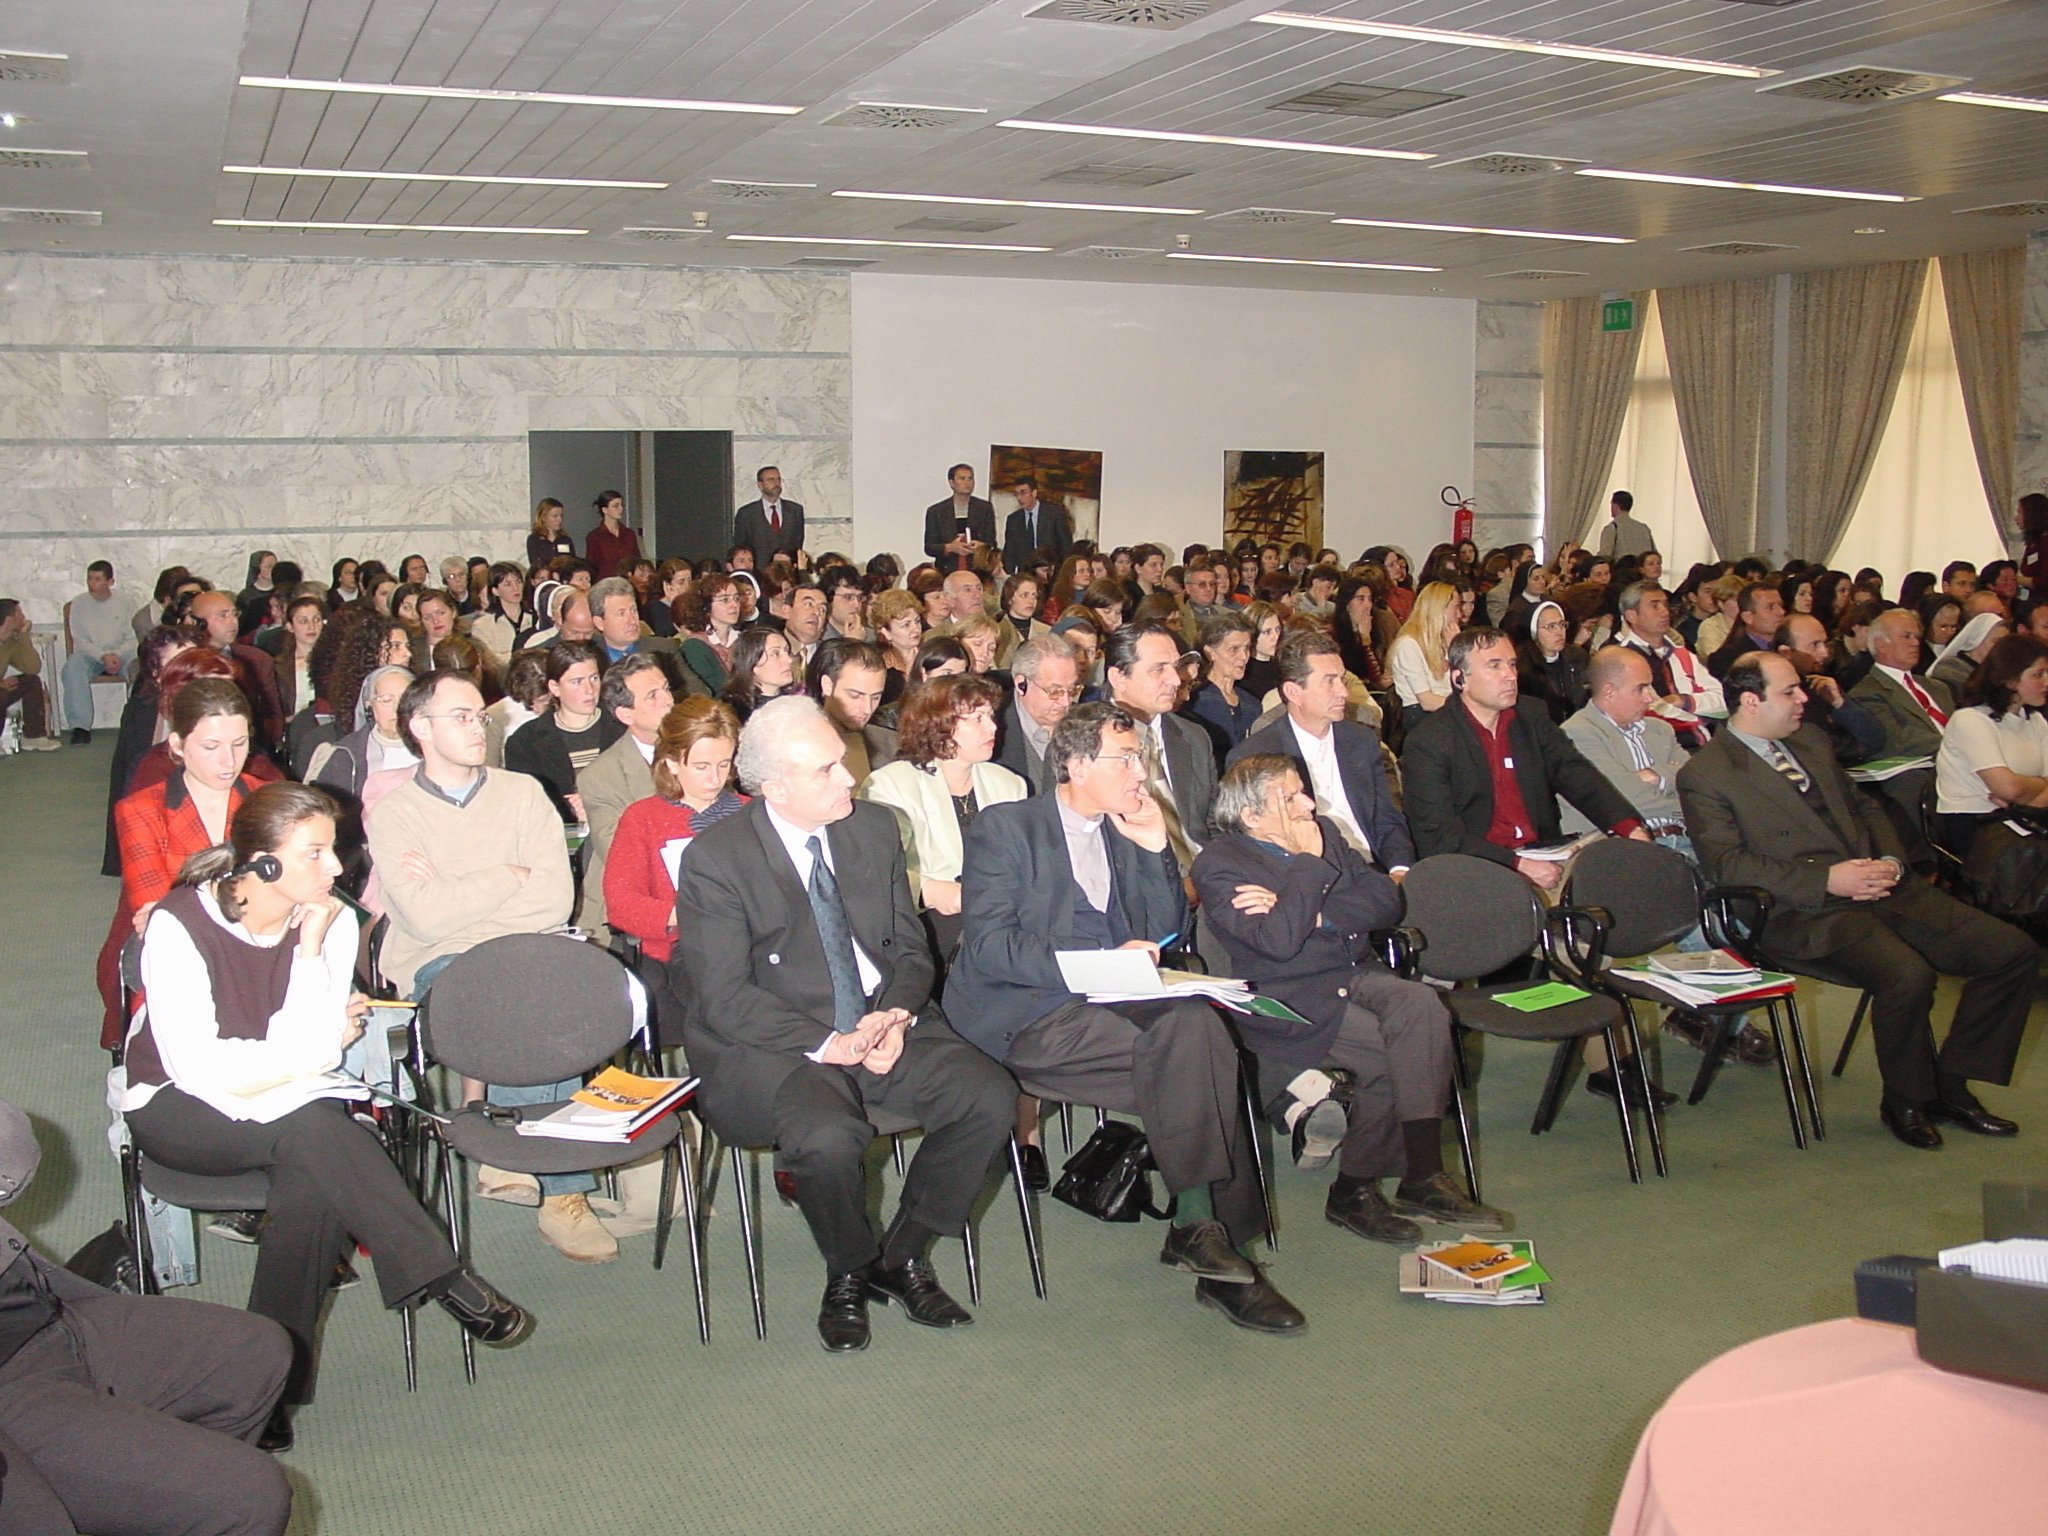 Angelo Longoni - Marzo 2002 Tirana, Albania: Convegno pubblico sullíeducazione a cui hanno partecipato le principali autorità politiche albanesi